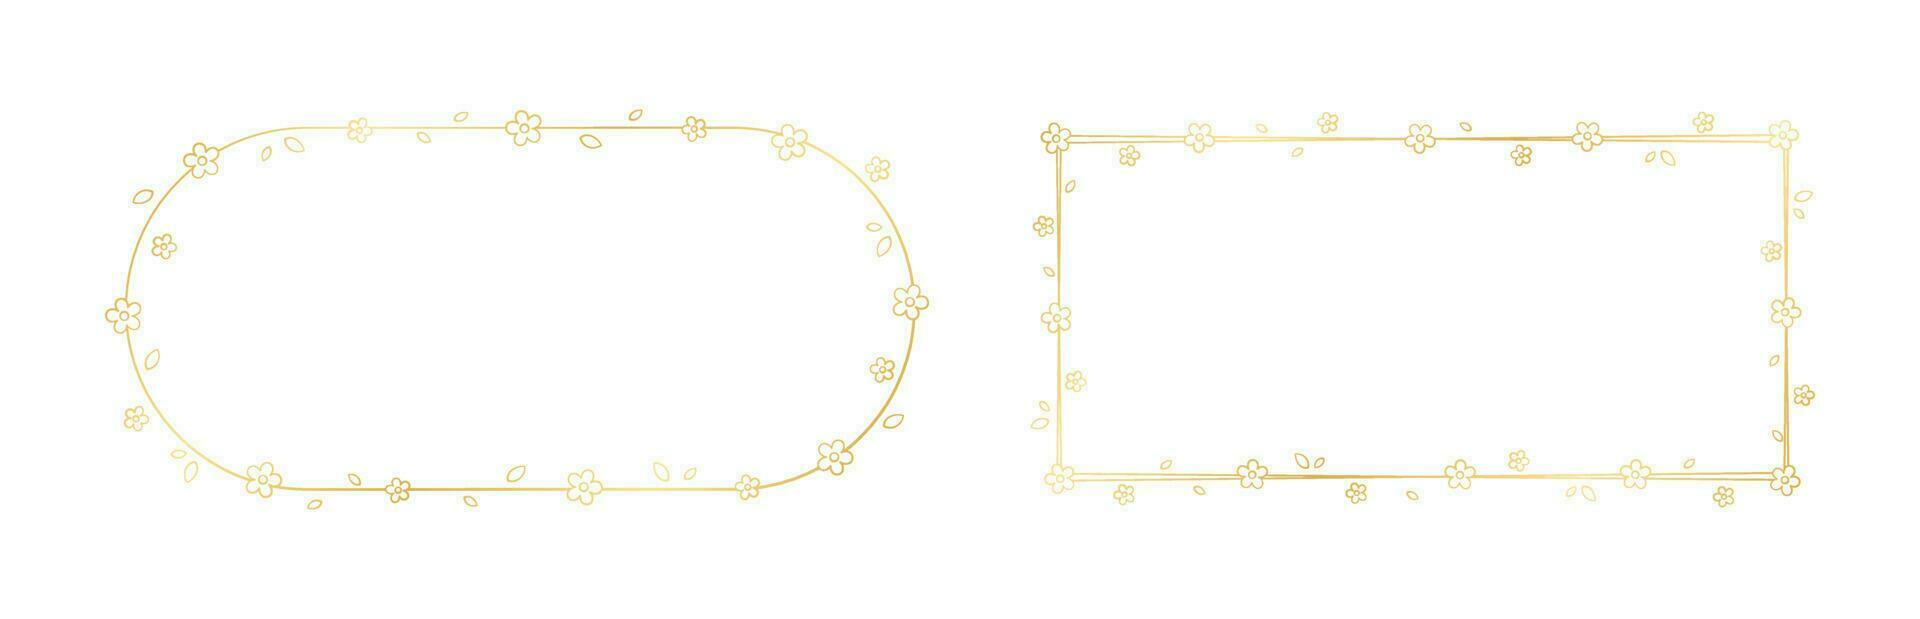 Gold Floral Frame Outline Doodle Set. Golden nature border template, flourish design element for wedding, greeting card. vector